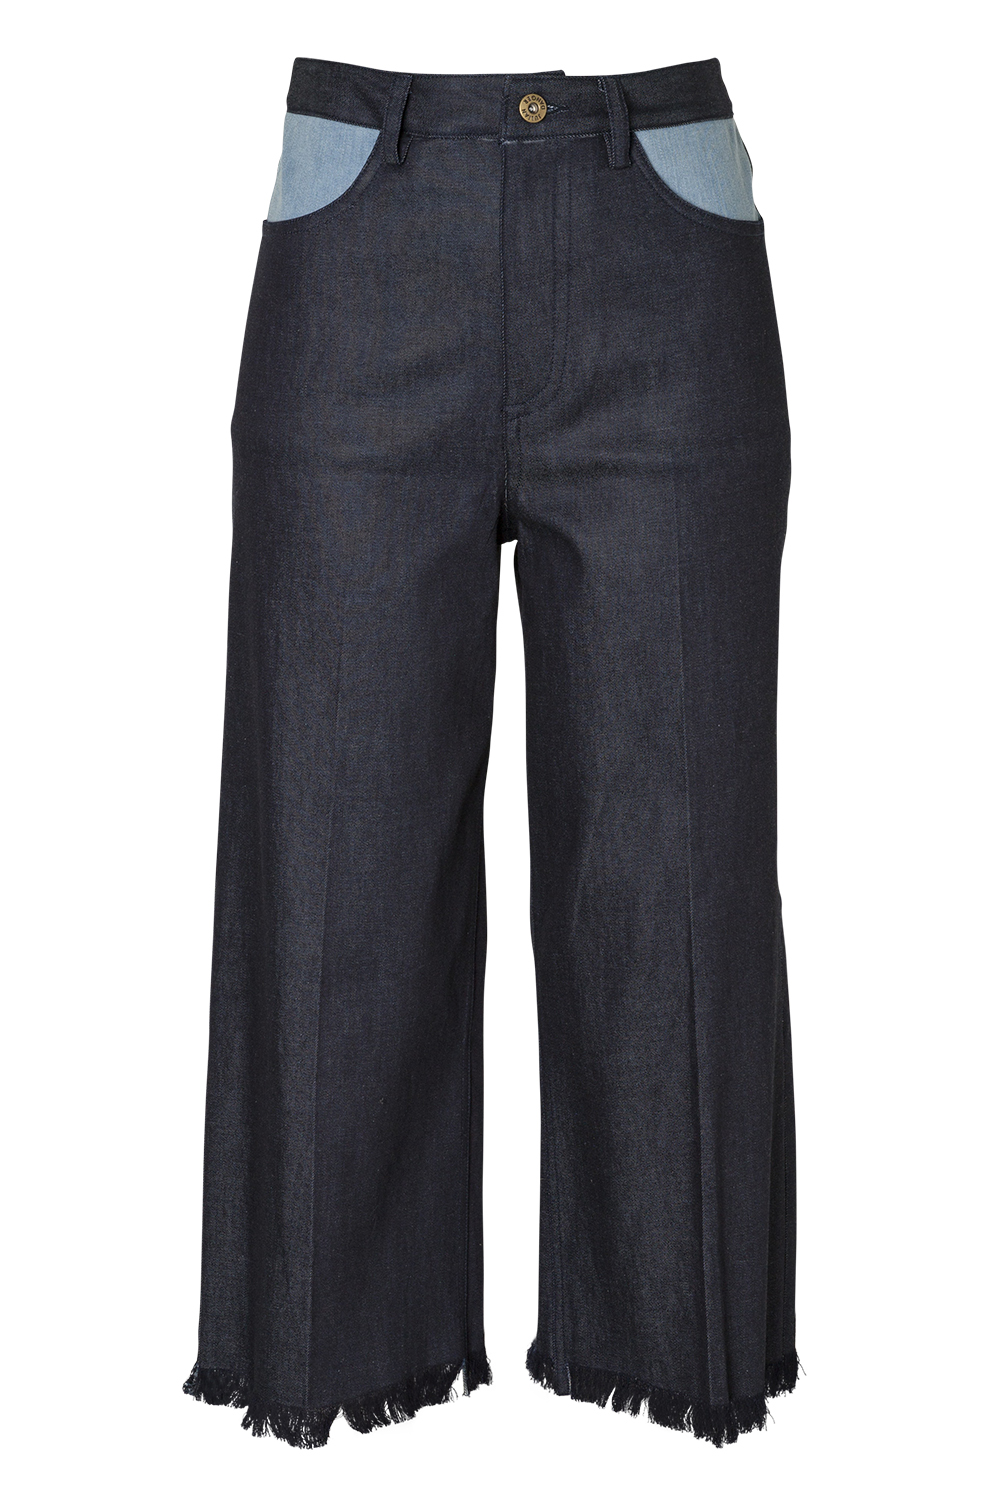 Cropped jeans, $253, by Julian Danger.